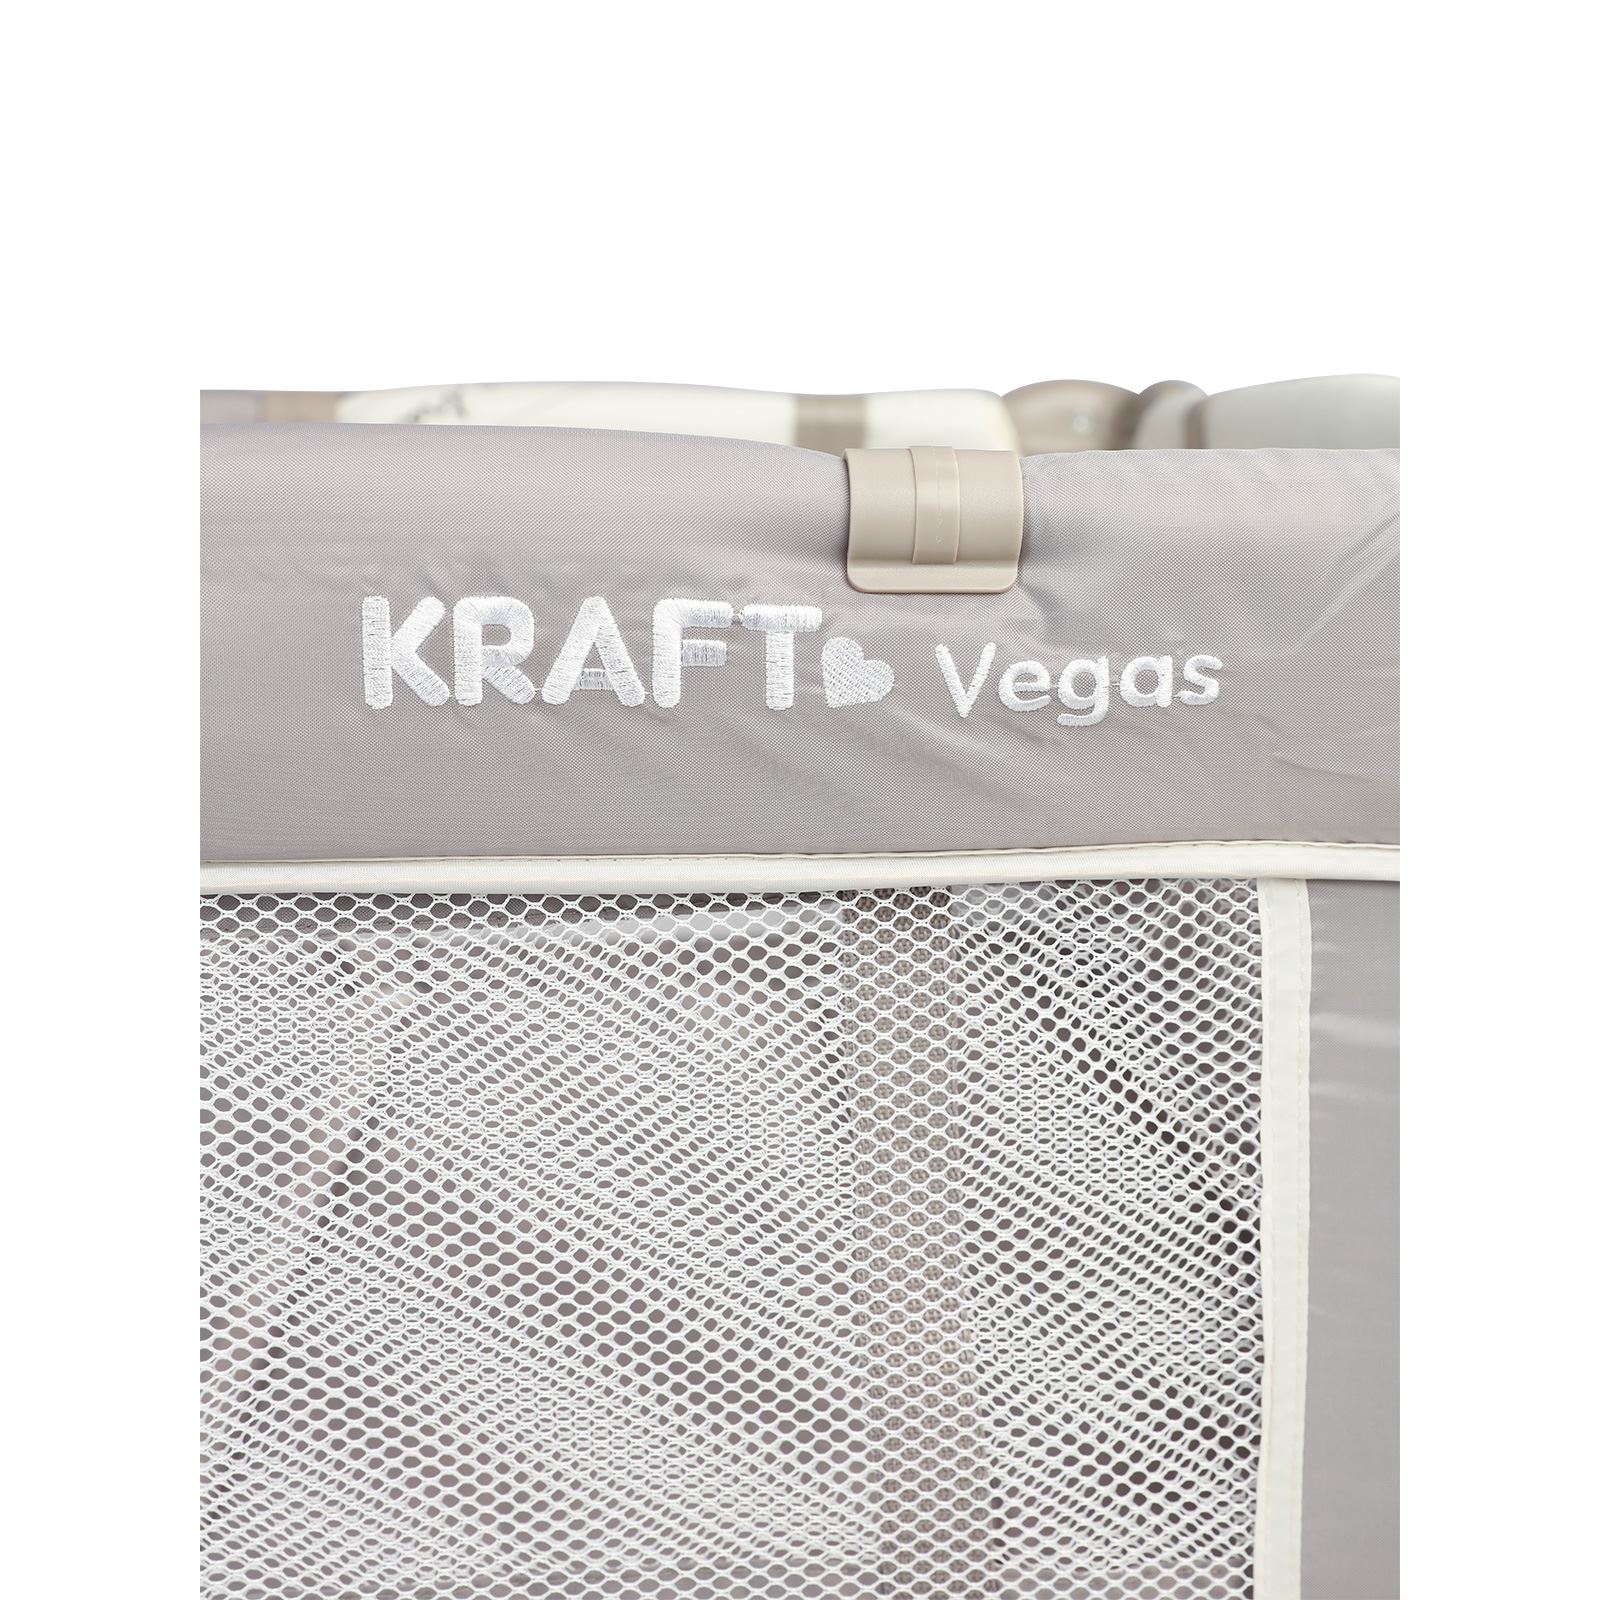 Kraft Vegas 70x110 cm Oyun Parkı Bej